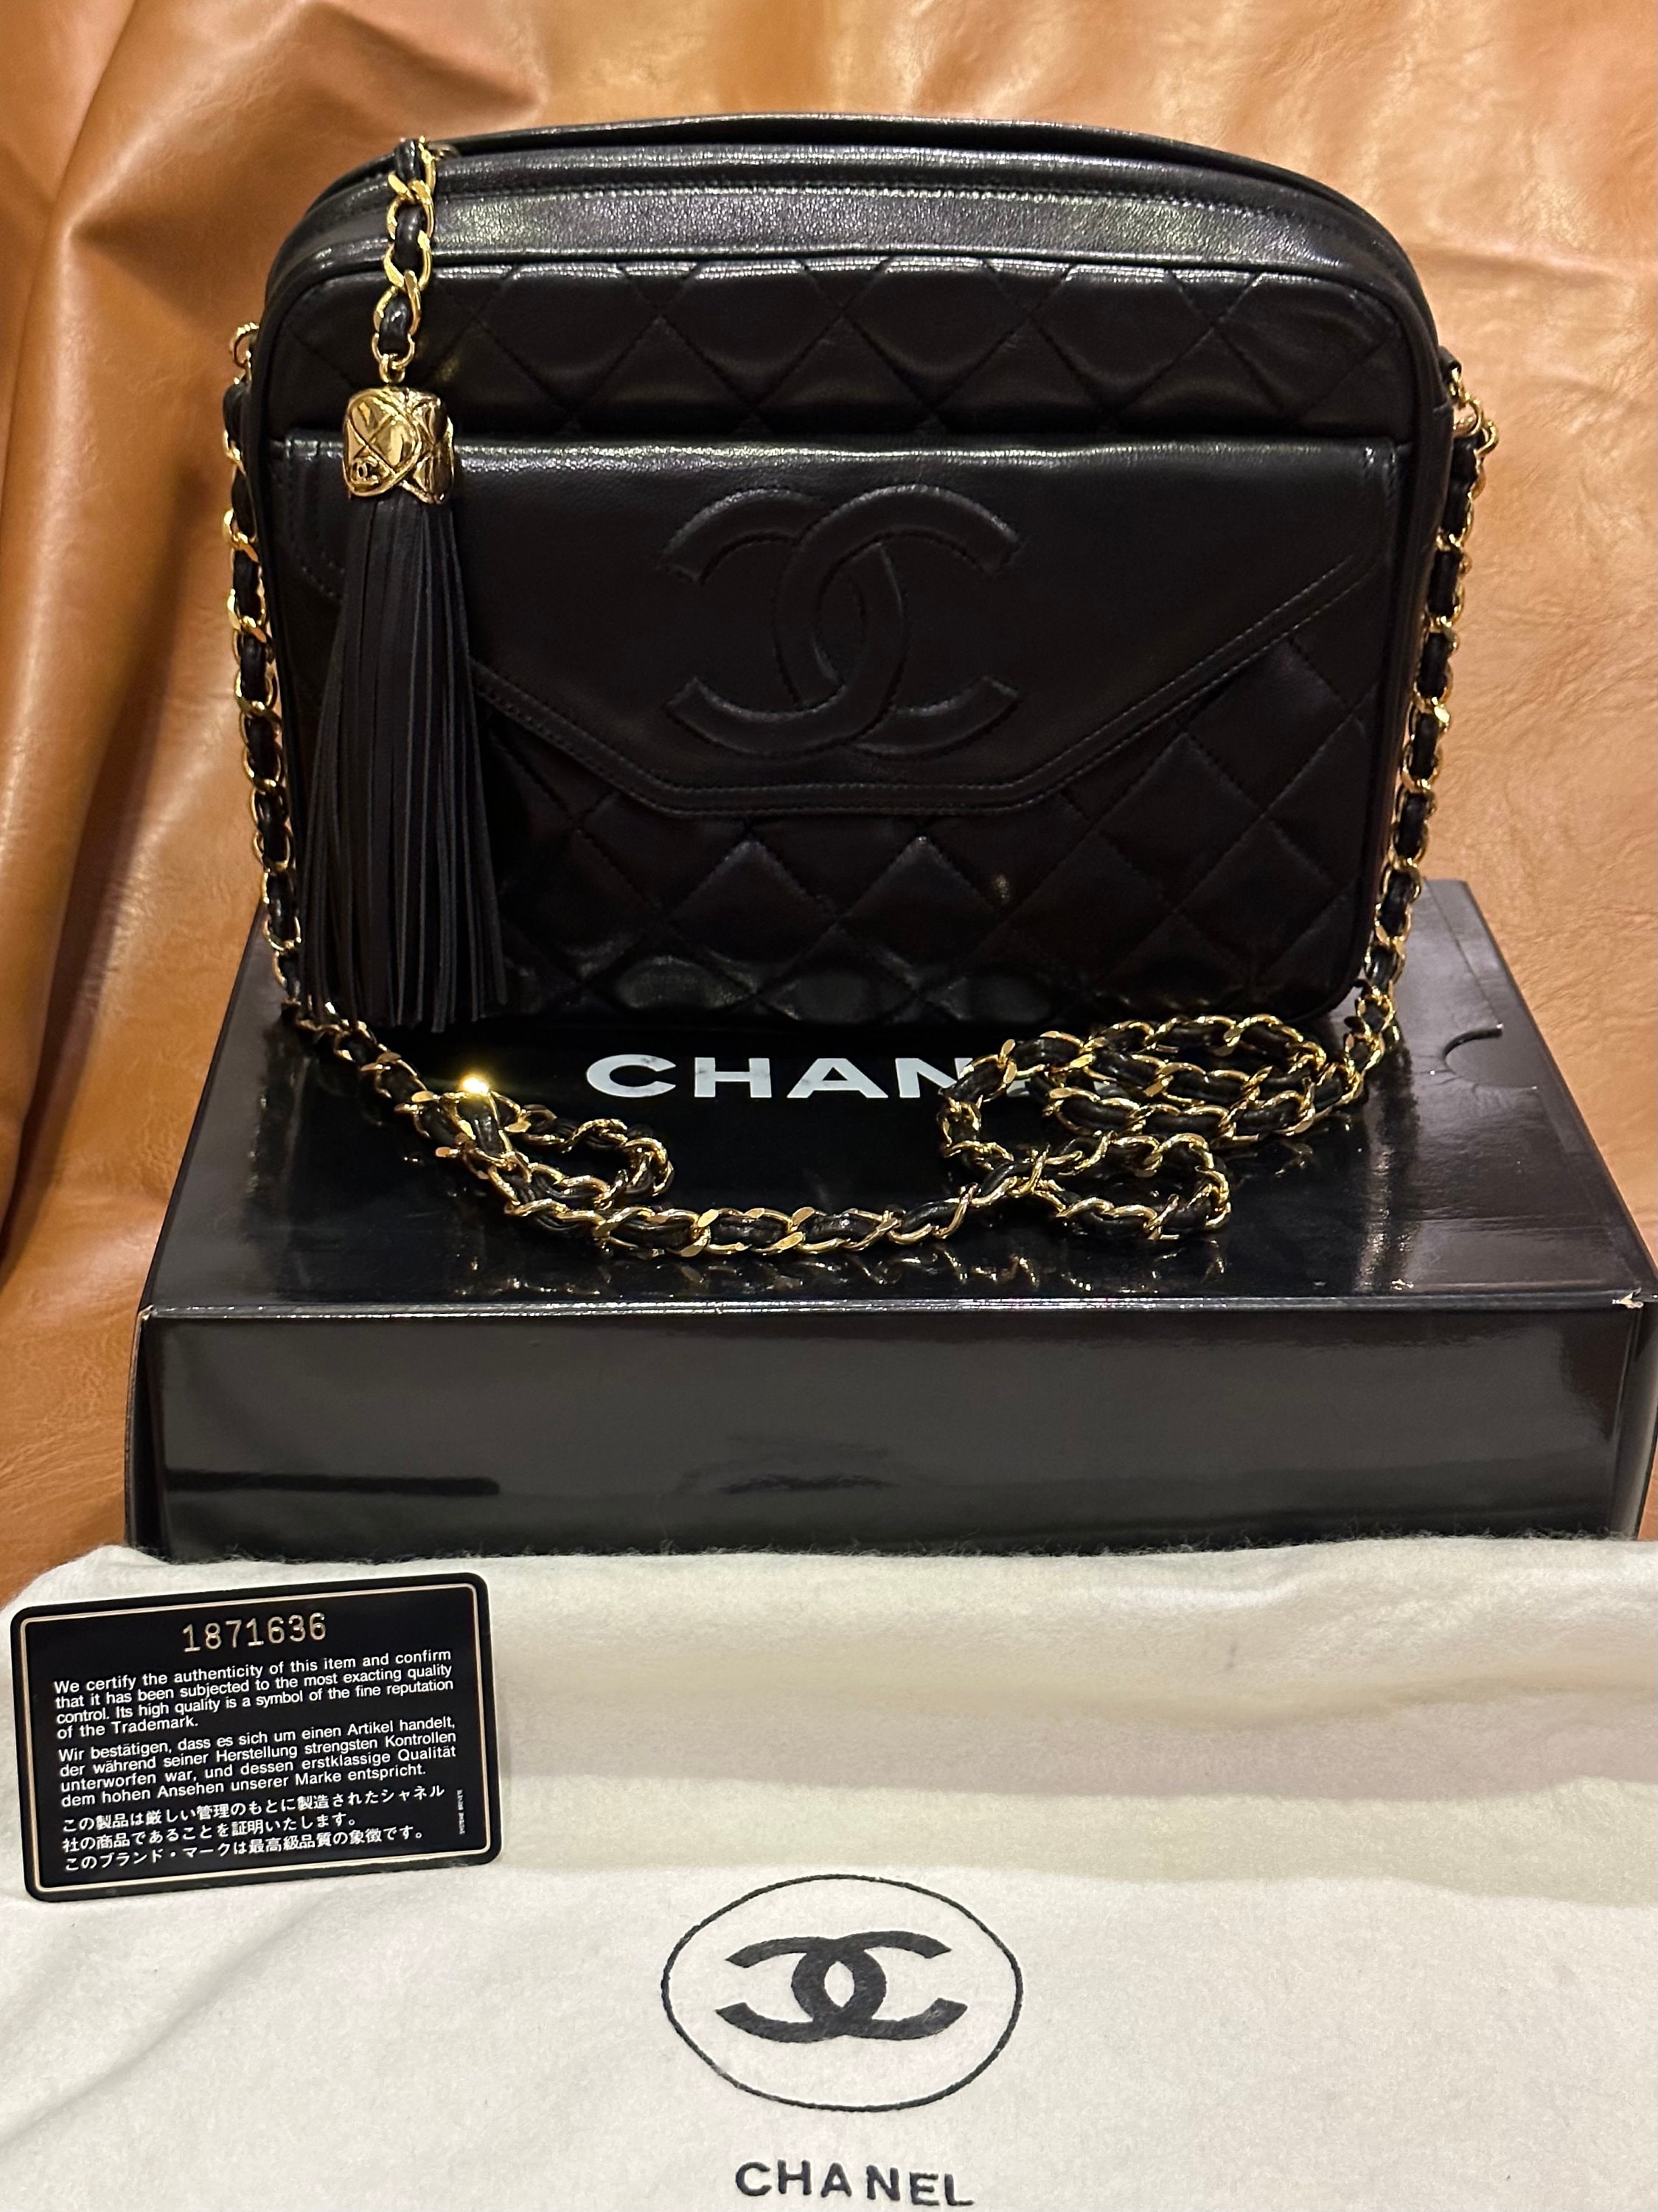 1990s Chanel Bag 